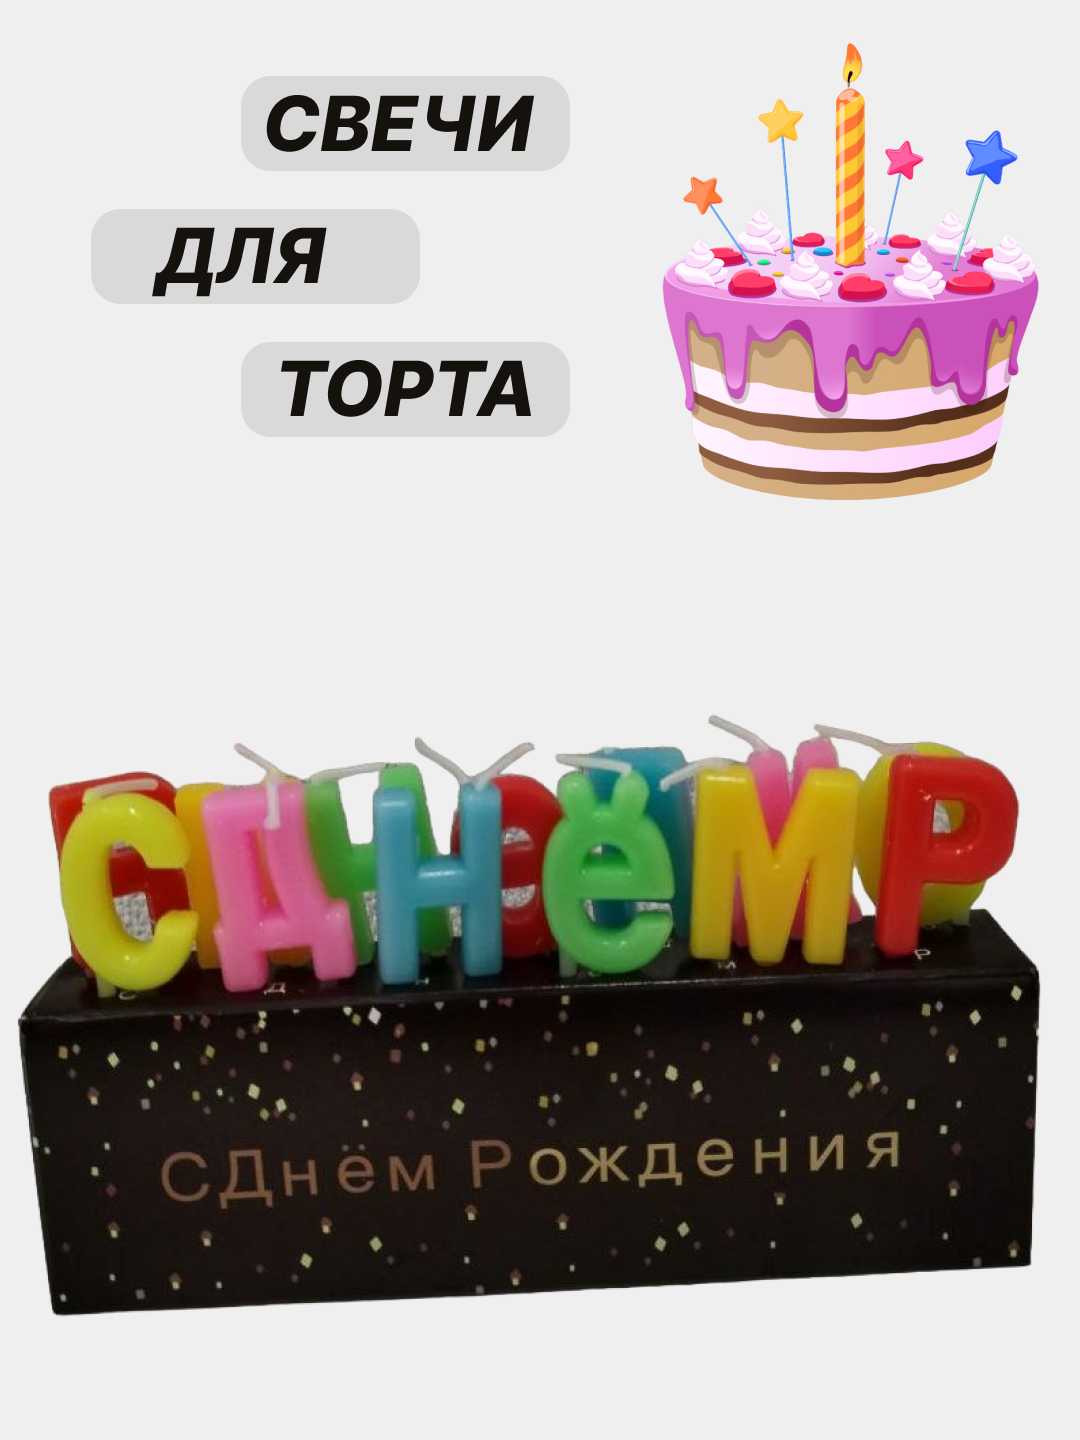 Набор свечей для торта "С днем рождения"